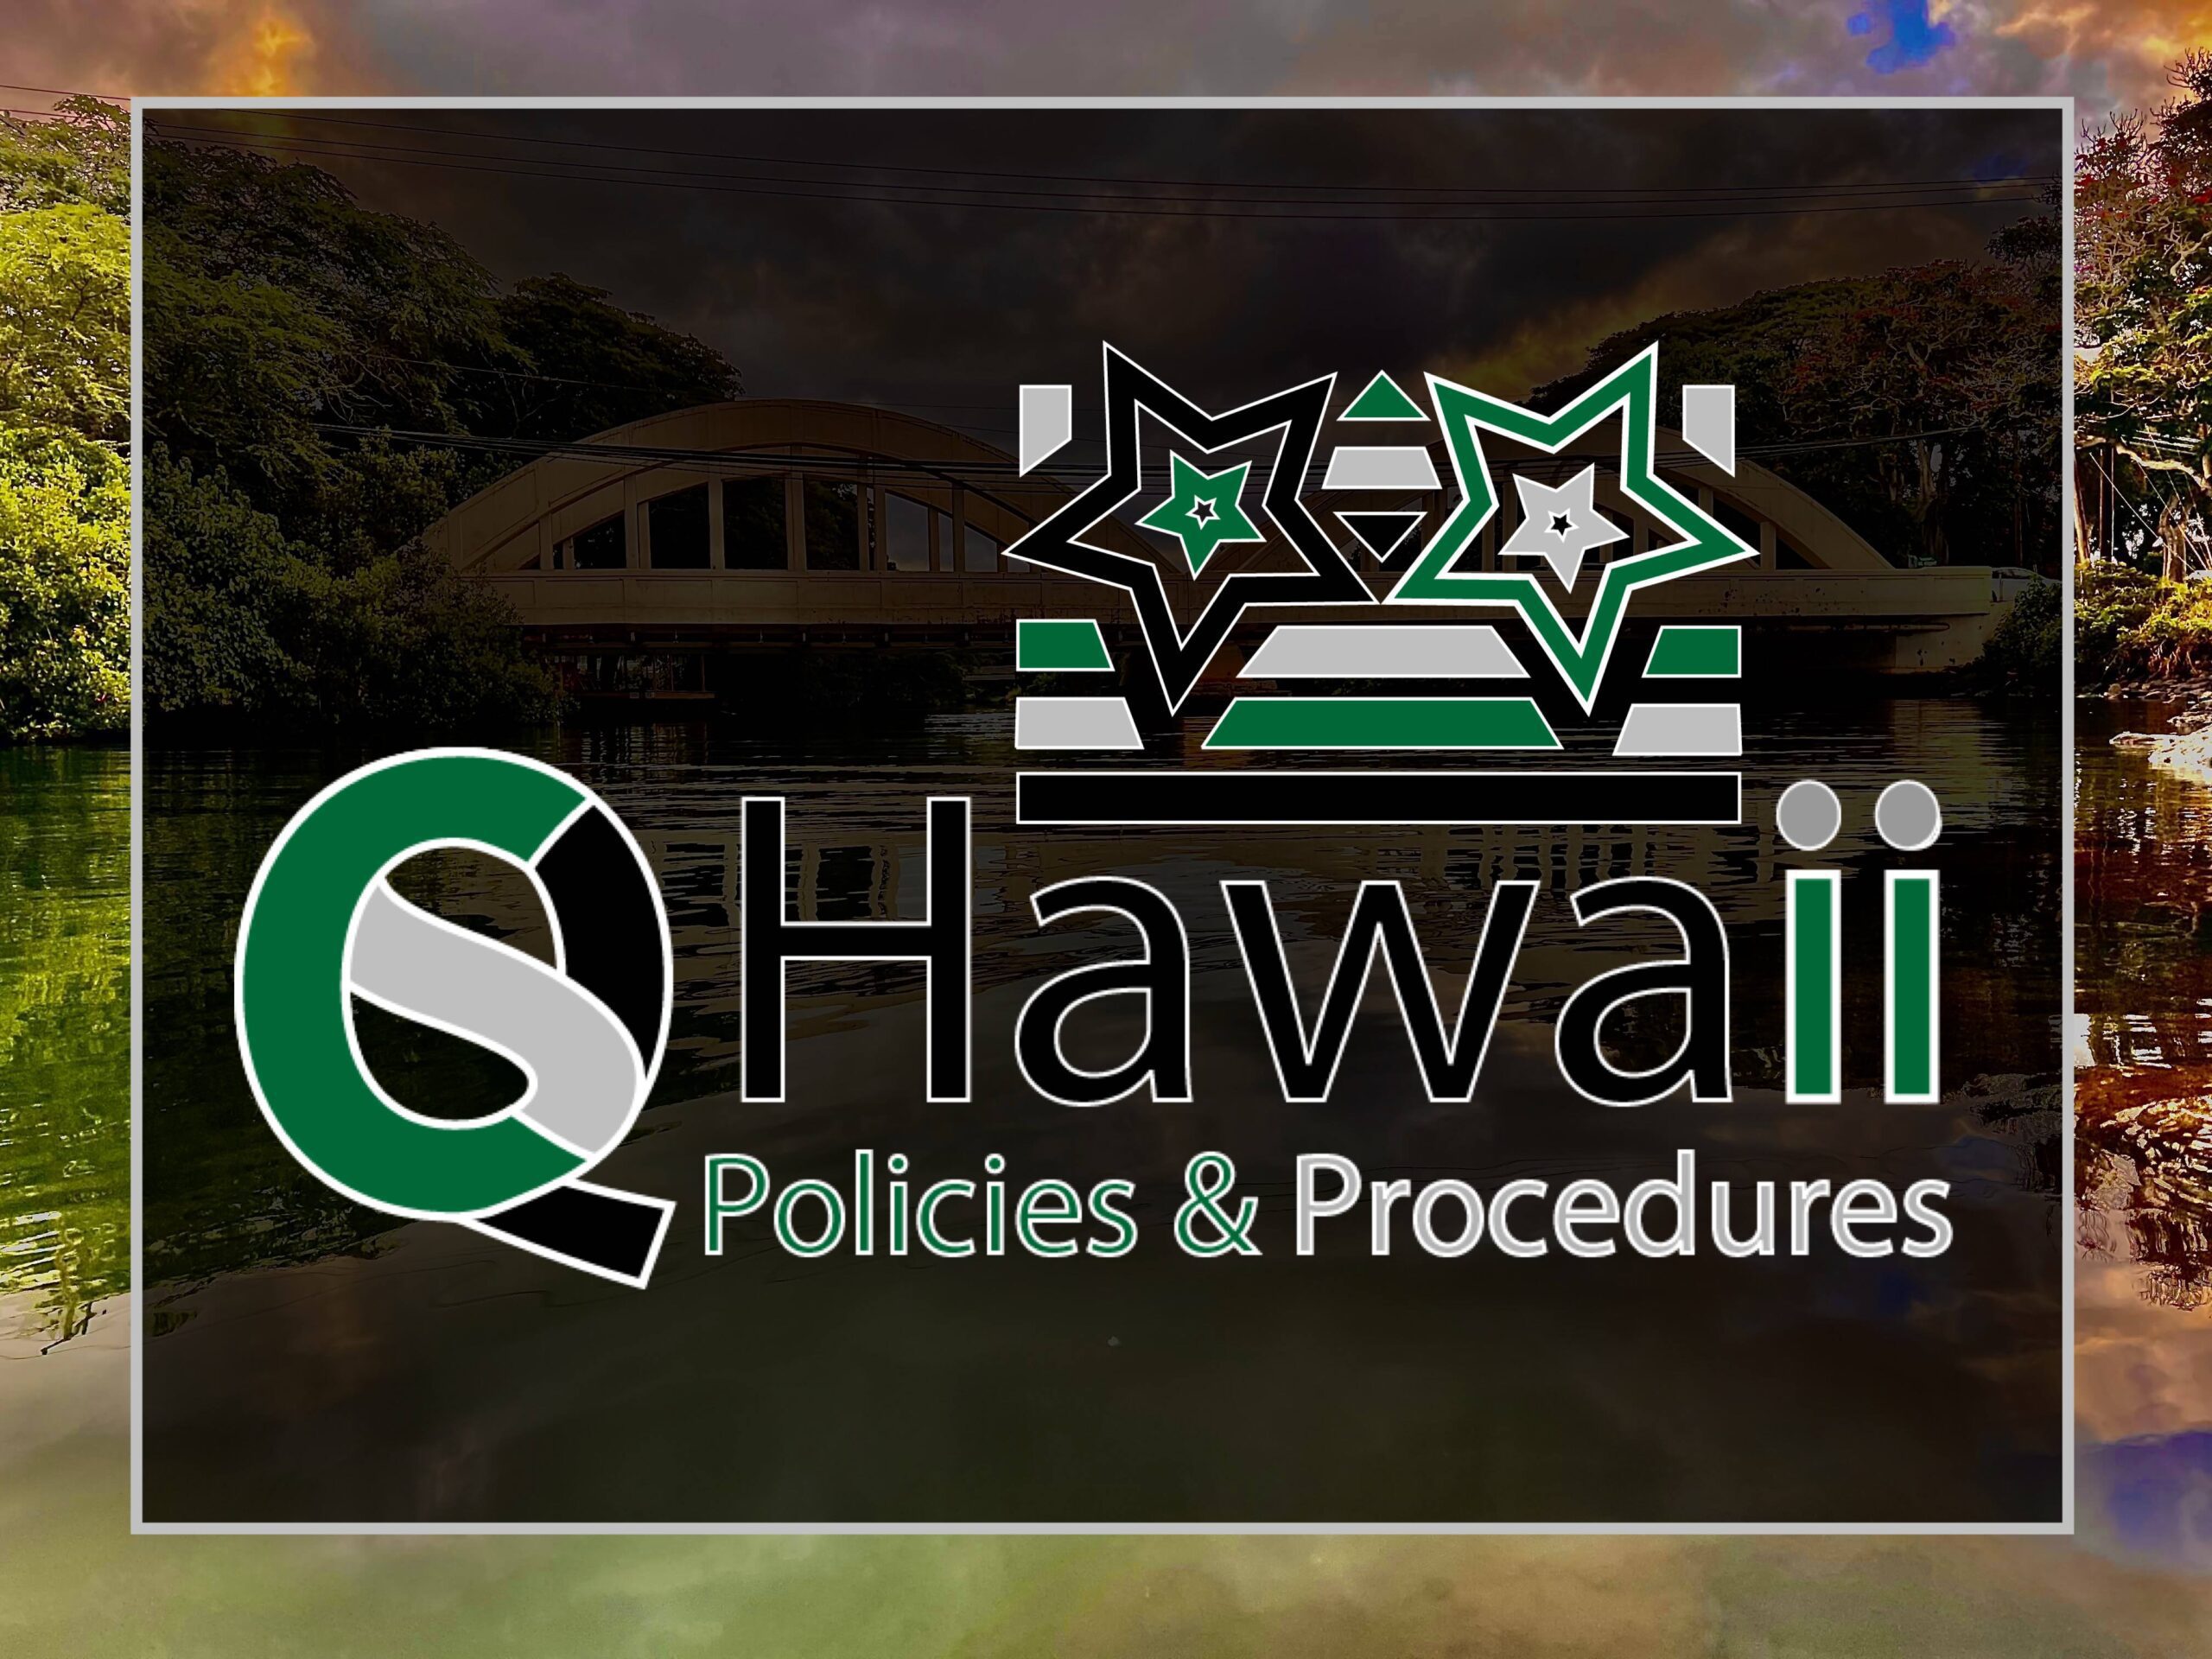 Company Policies Procedures Logo